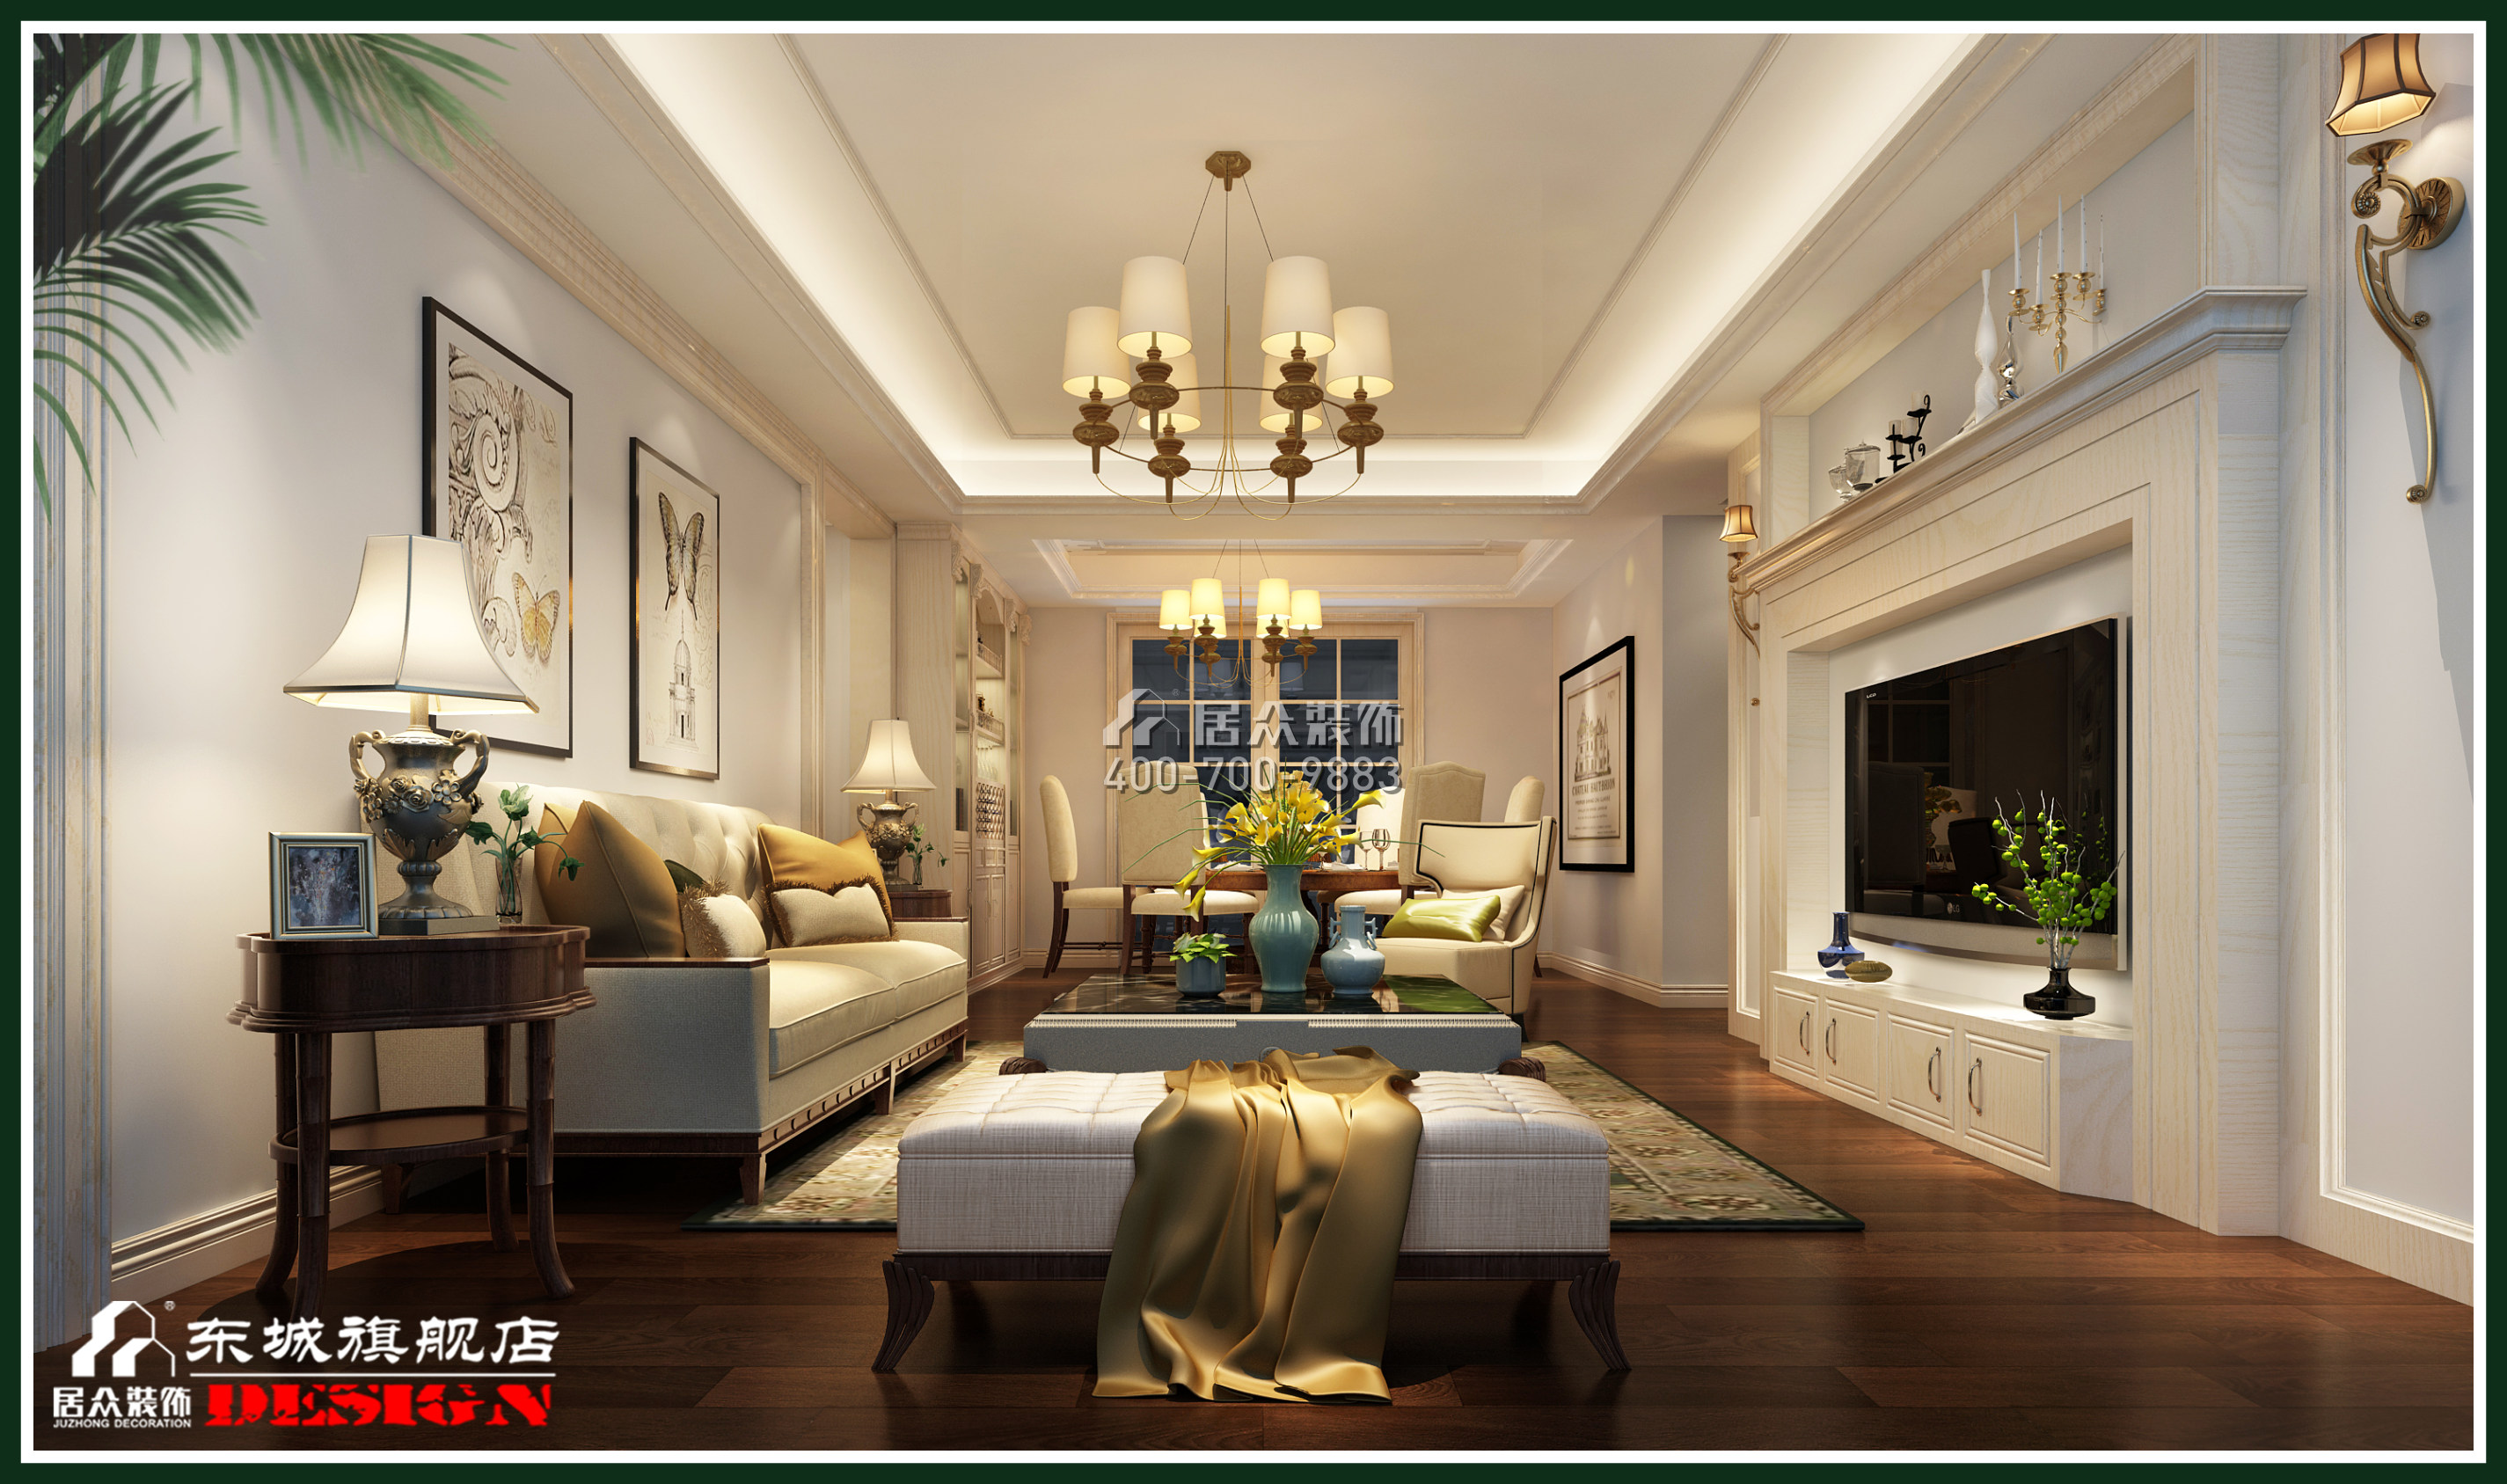 融科东南海148平方米美式风格平层户型客厅装修效果图